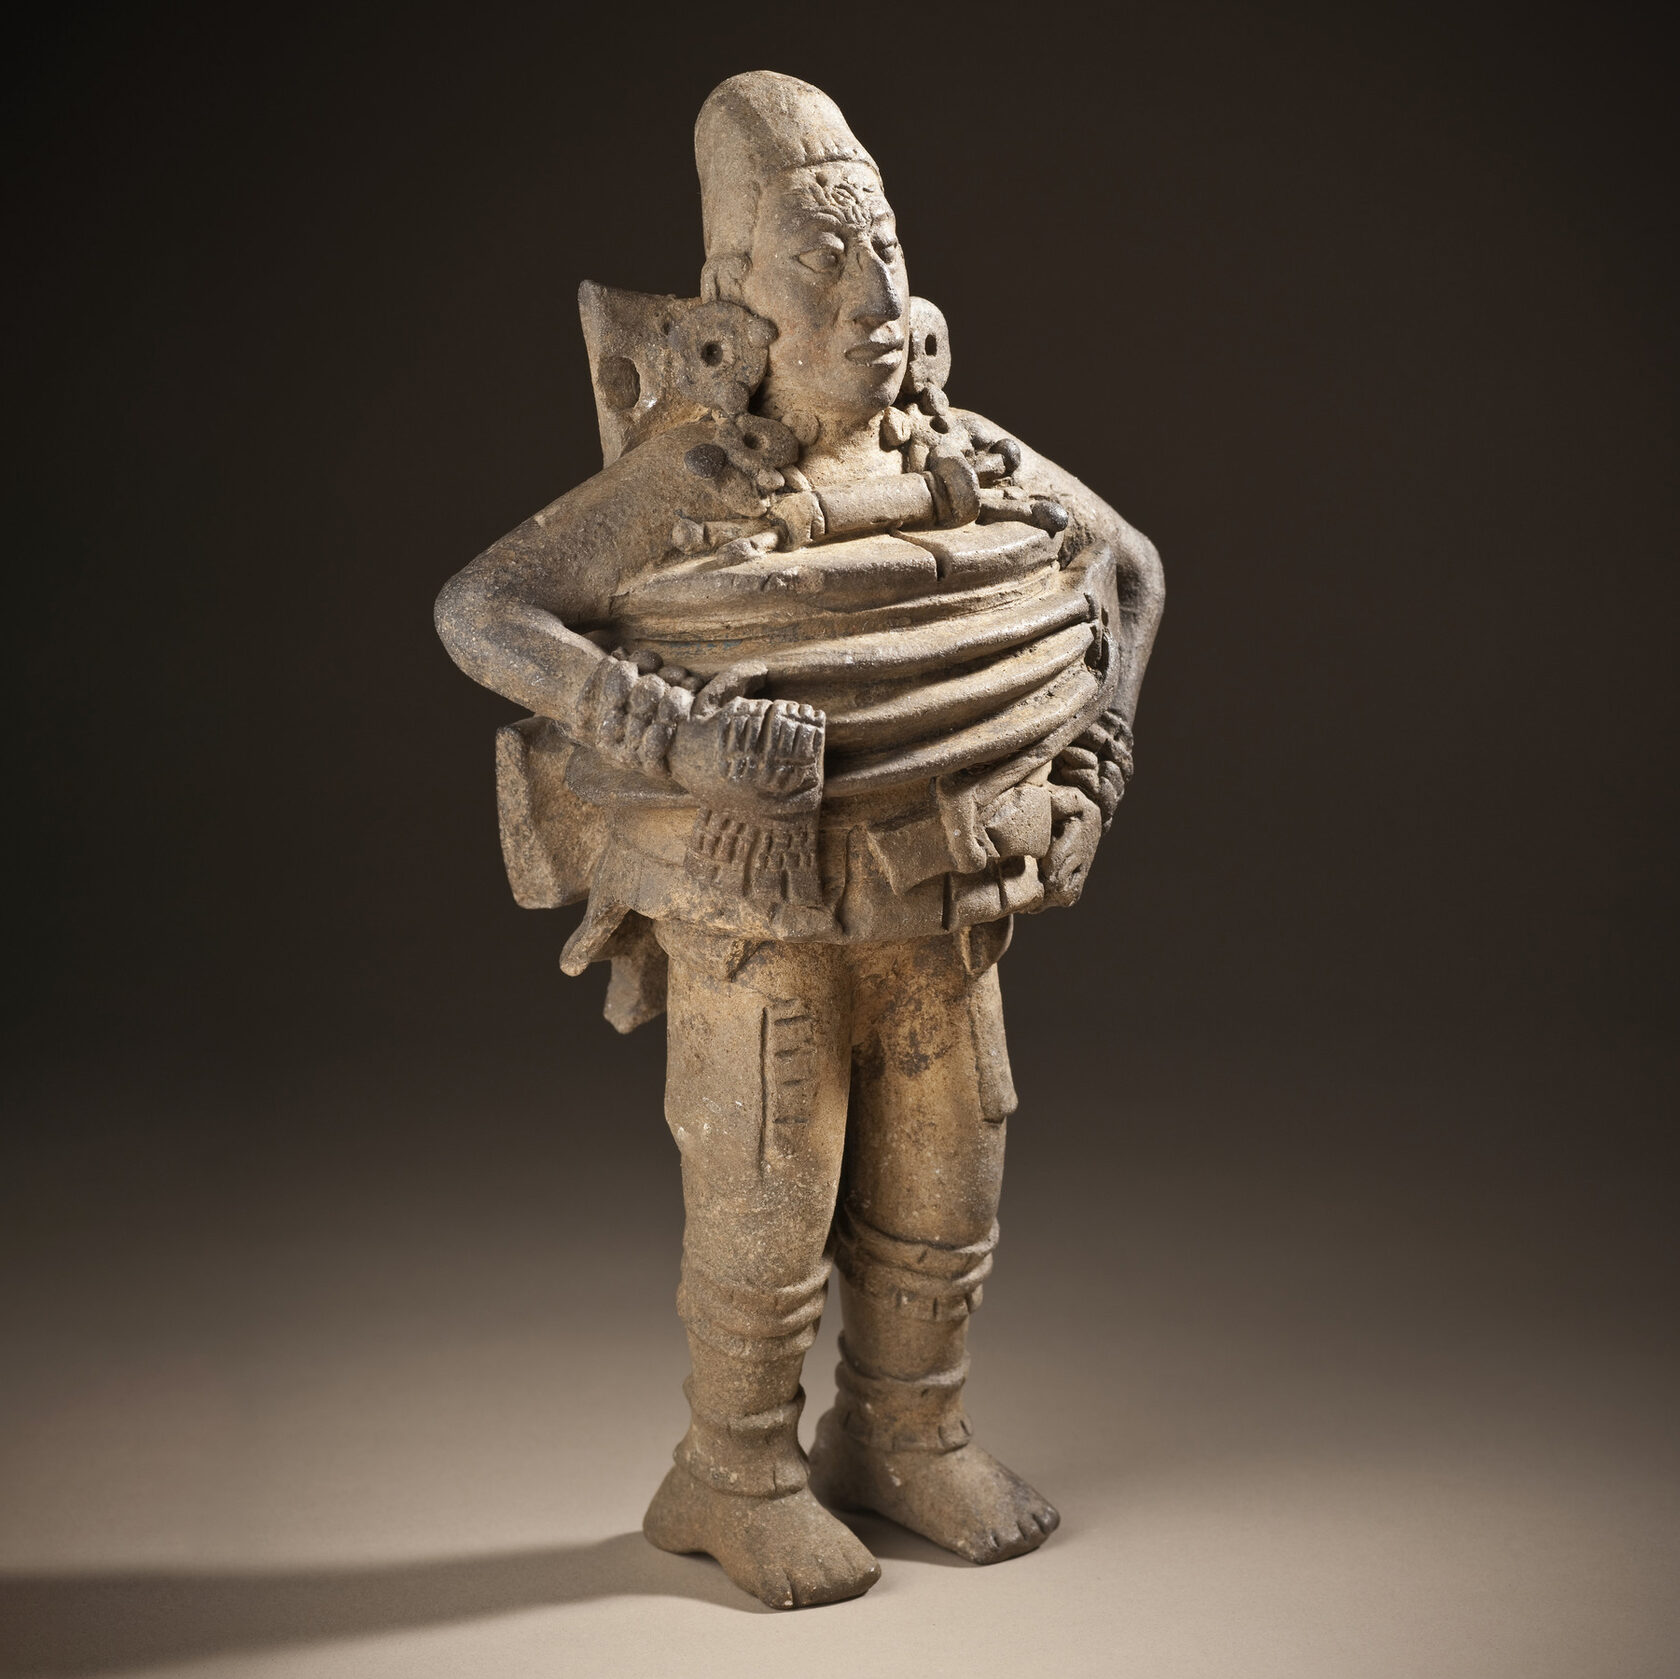 Фигура игрока в мяч. Майя, 550-850 гг. н.э. Коллекция Los Angeles County Museum of Art.